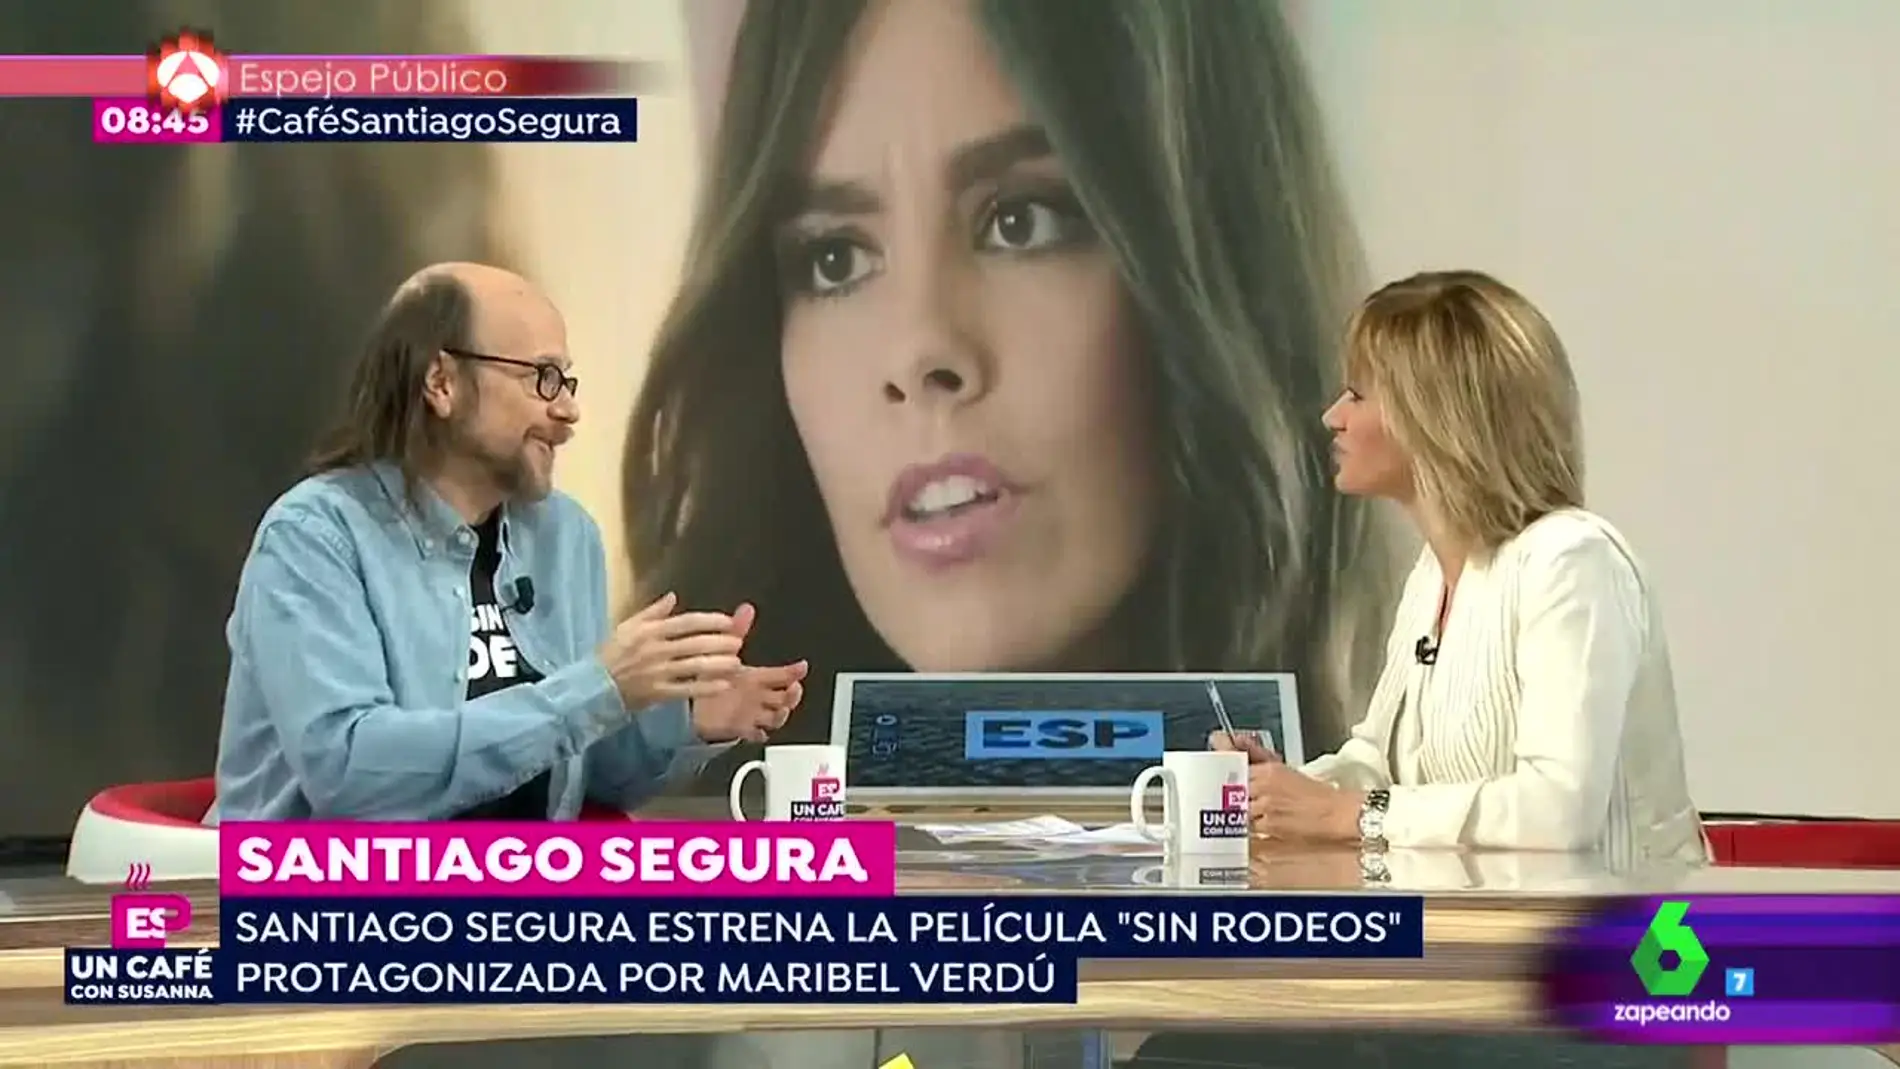 Santiago Segura habla de Cristina Pedroche como actriz